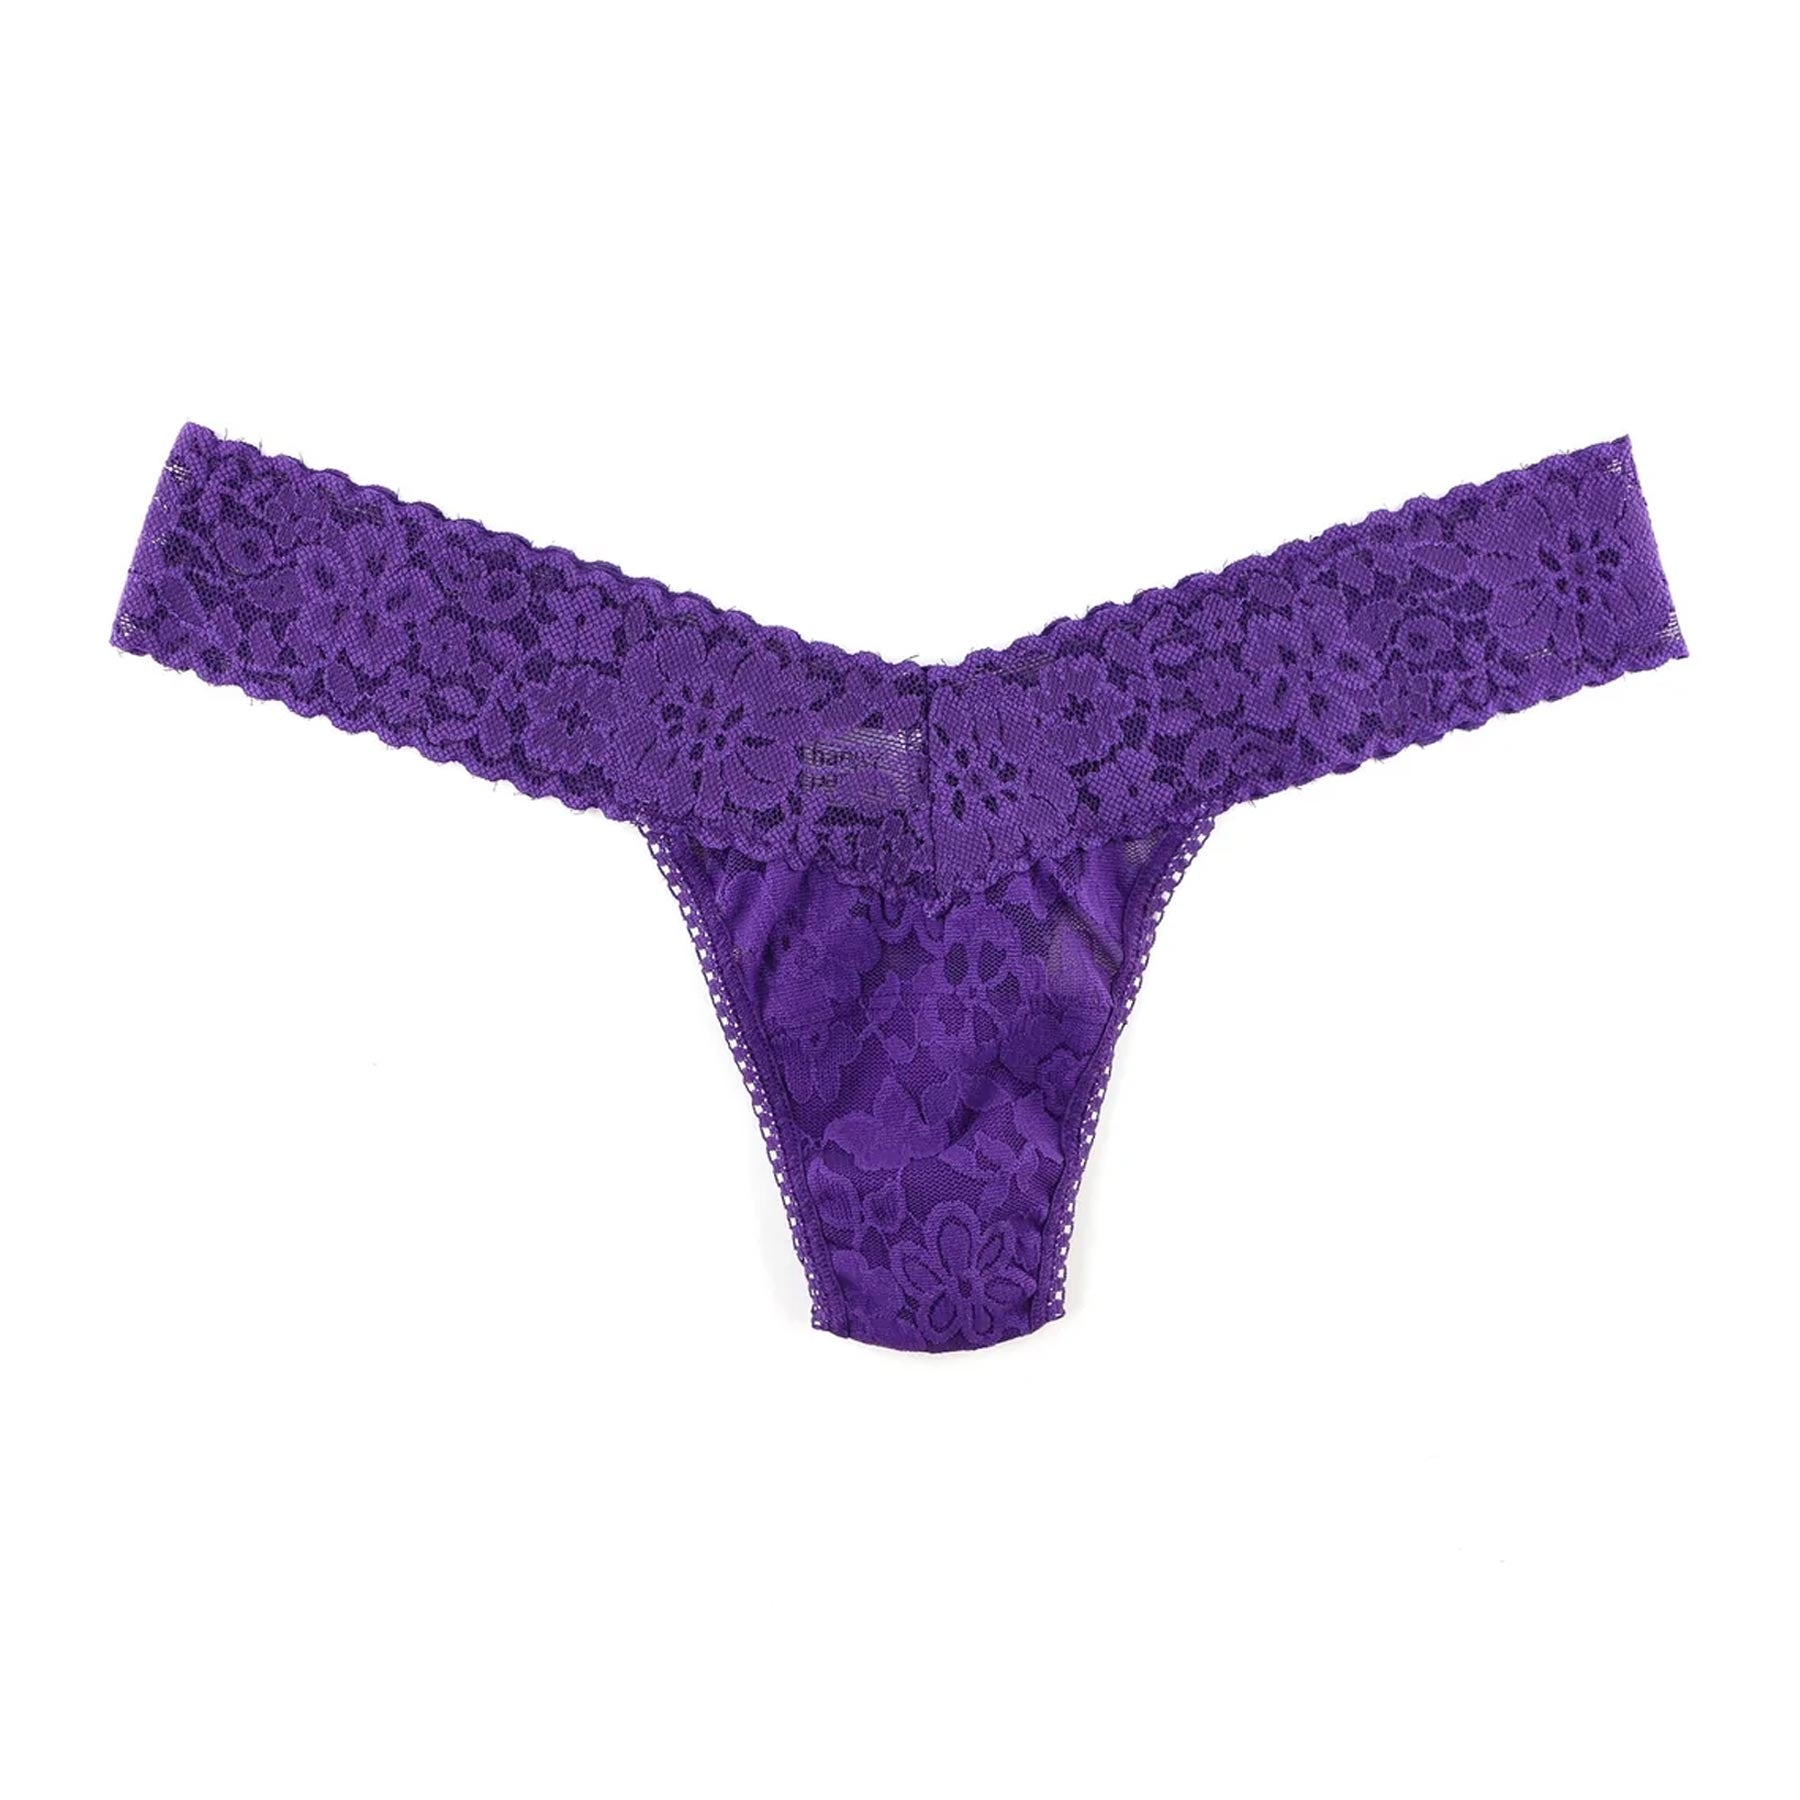 hipundies - Mary Green : A week of undies- 7 silk knit thongs